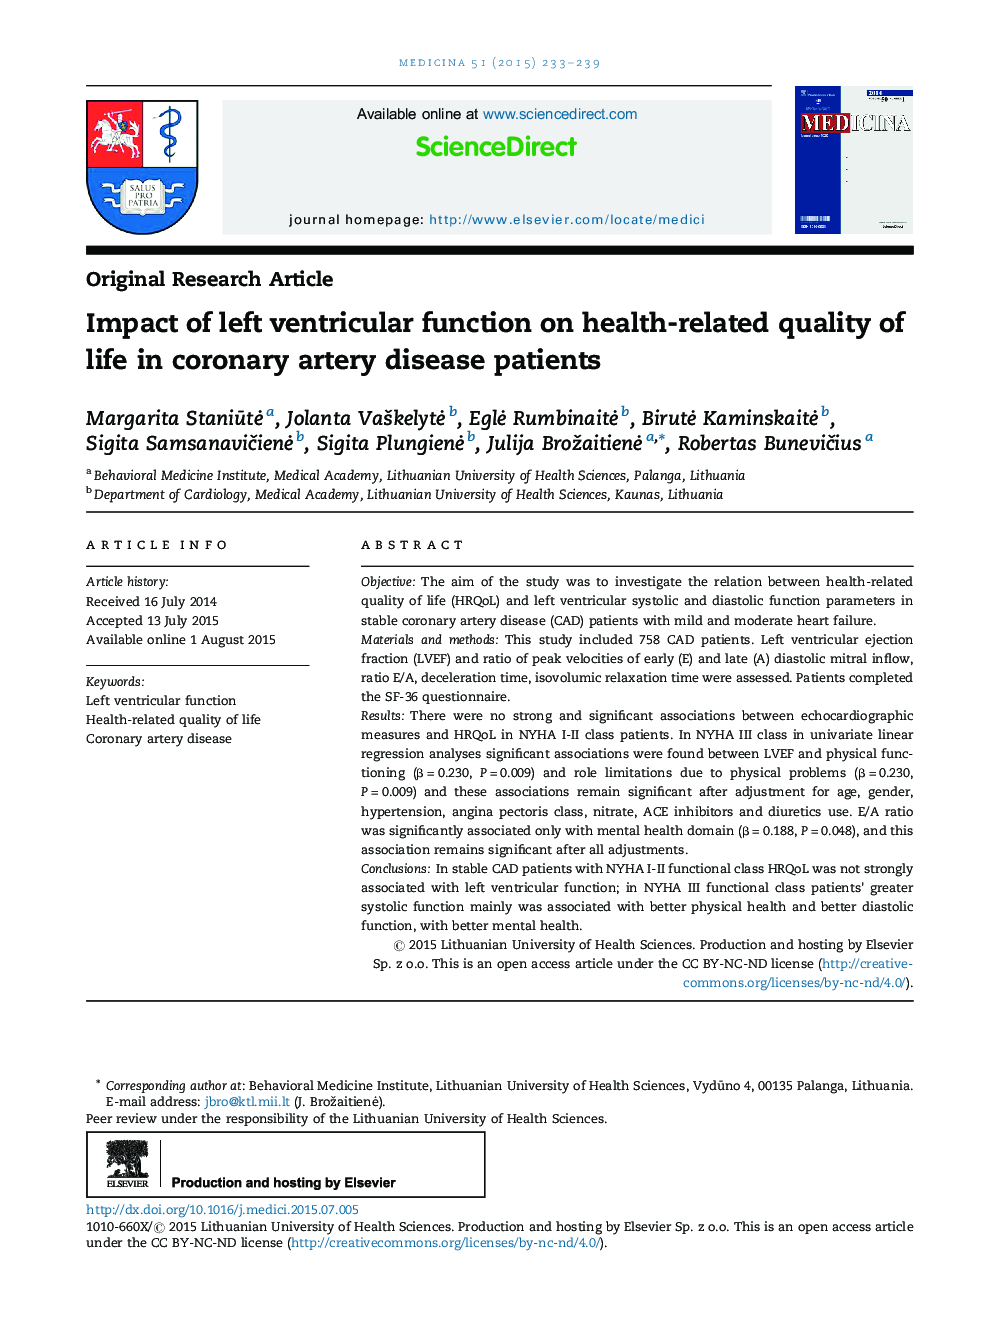 تأثیر عملکرد بطن چپ بر کیفیت زندگی مرتبط با سلامت در بیماران مبتلا به بیماری عروق کرونر 